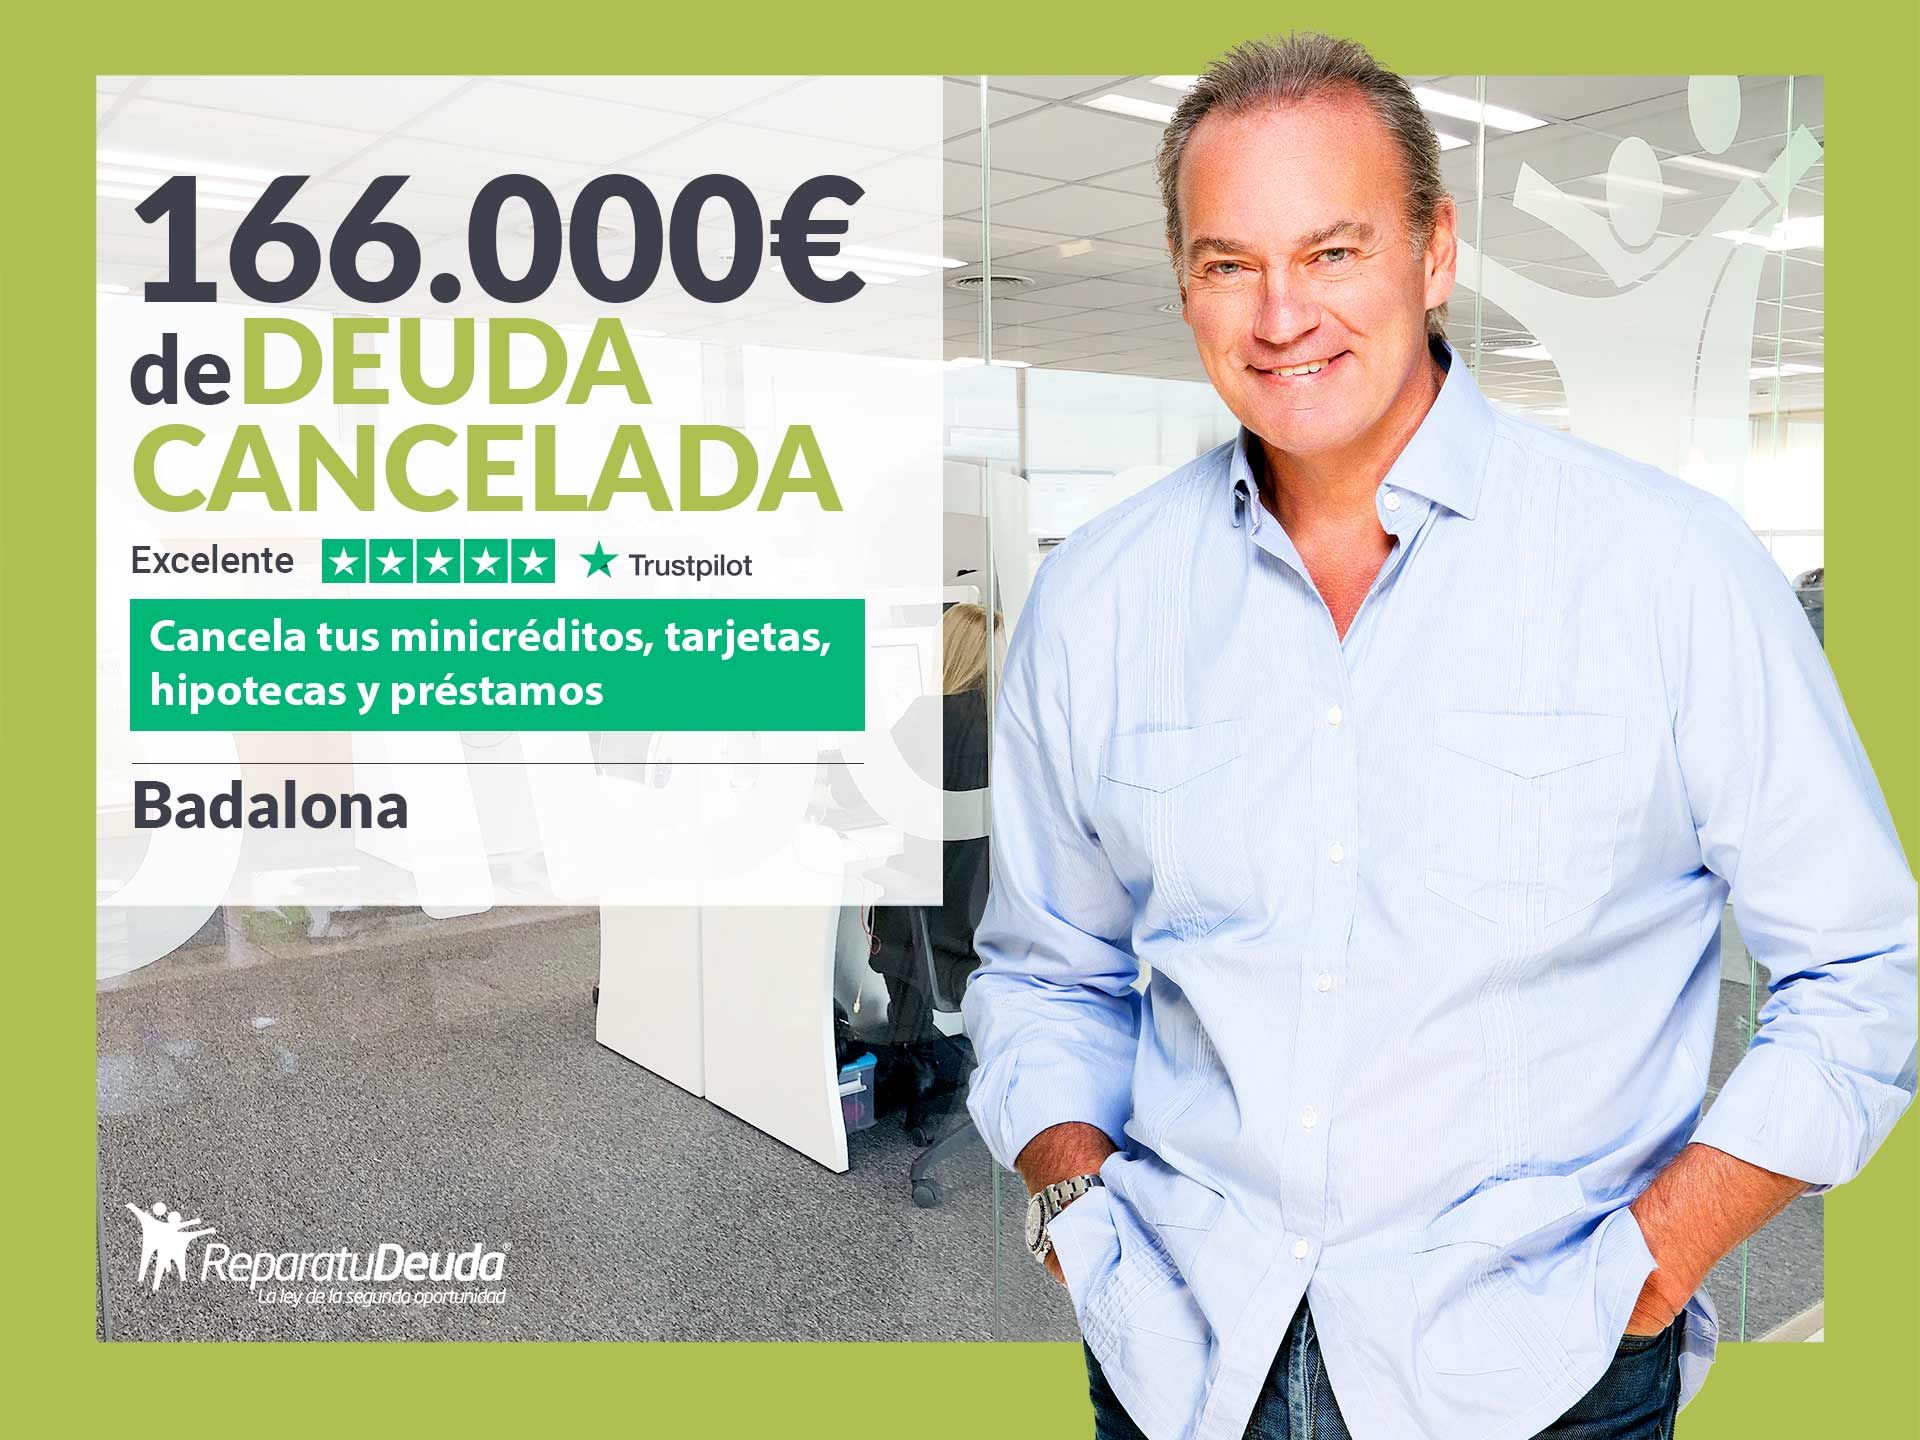 Repara tu Deuda Abogados cancela 166.000? en Badalona (Barcelona) gracias a la Ley de Segunda Oportunidad